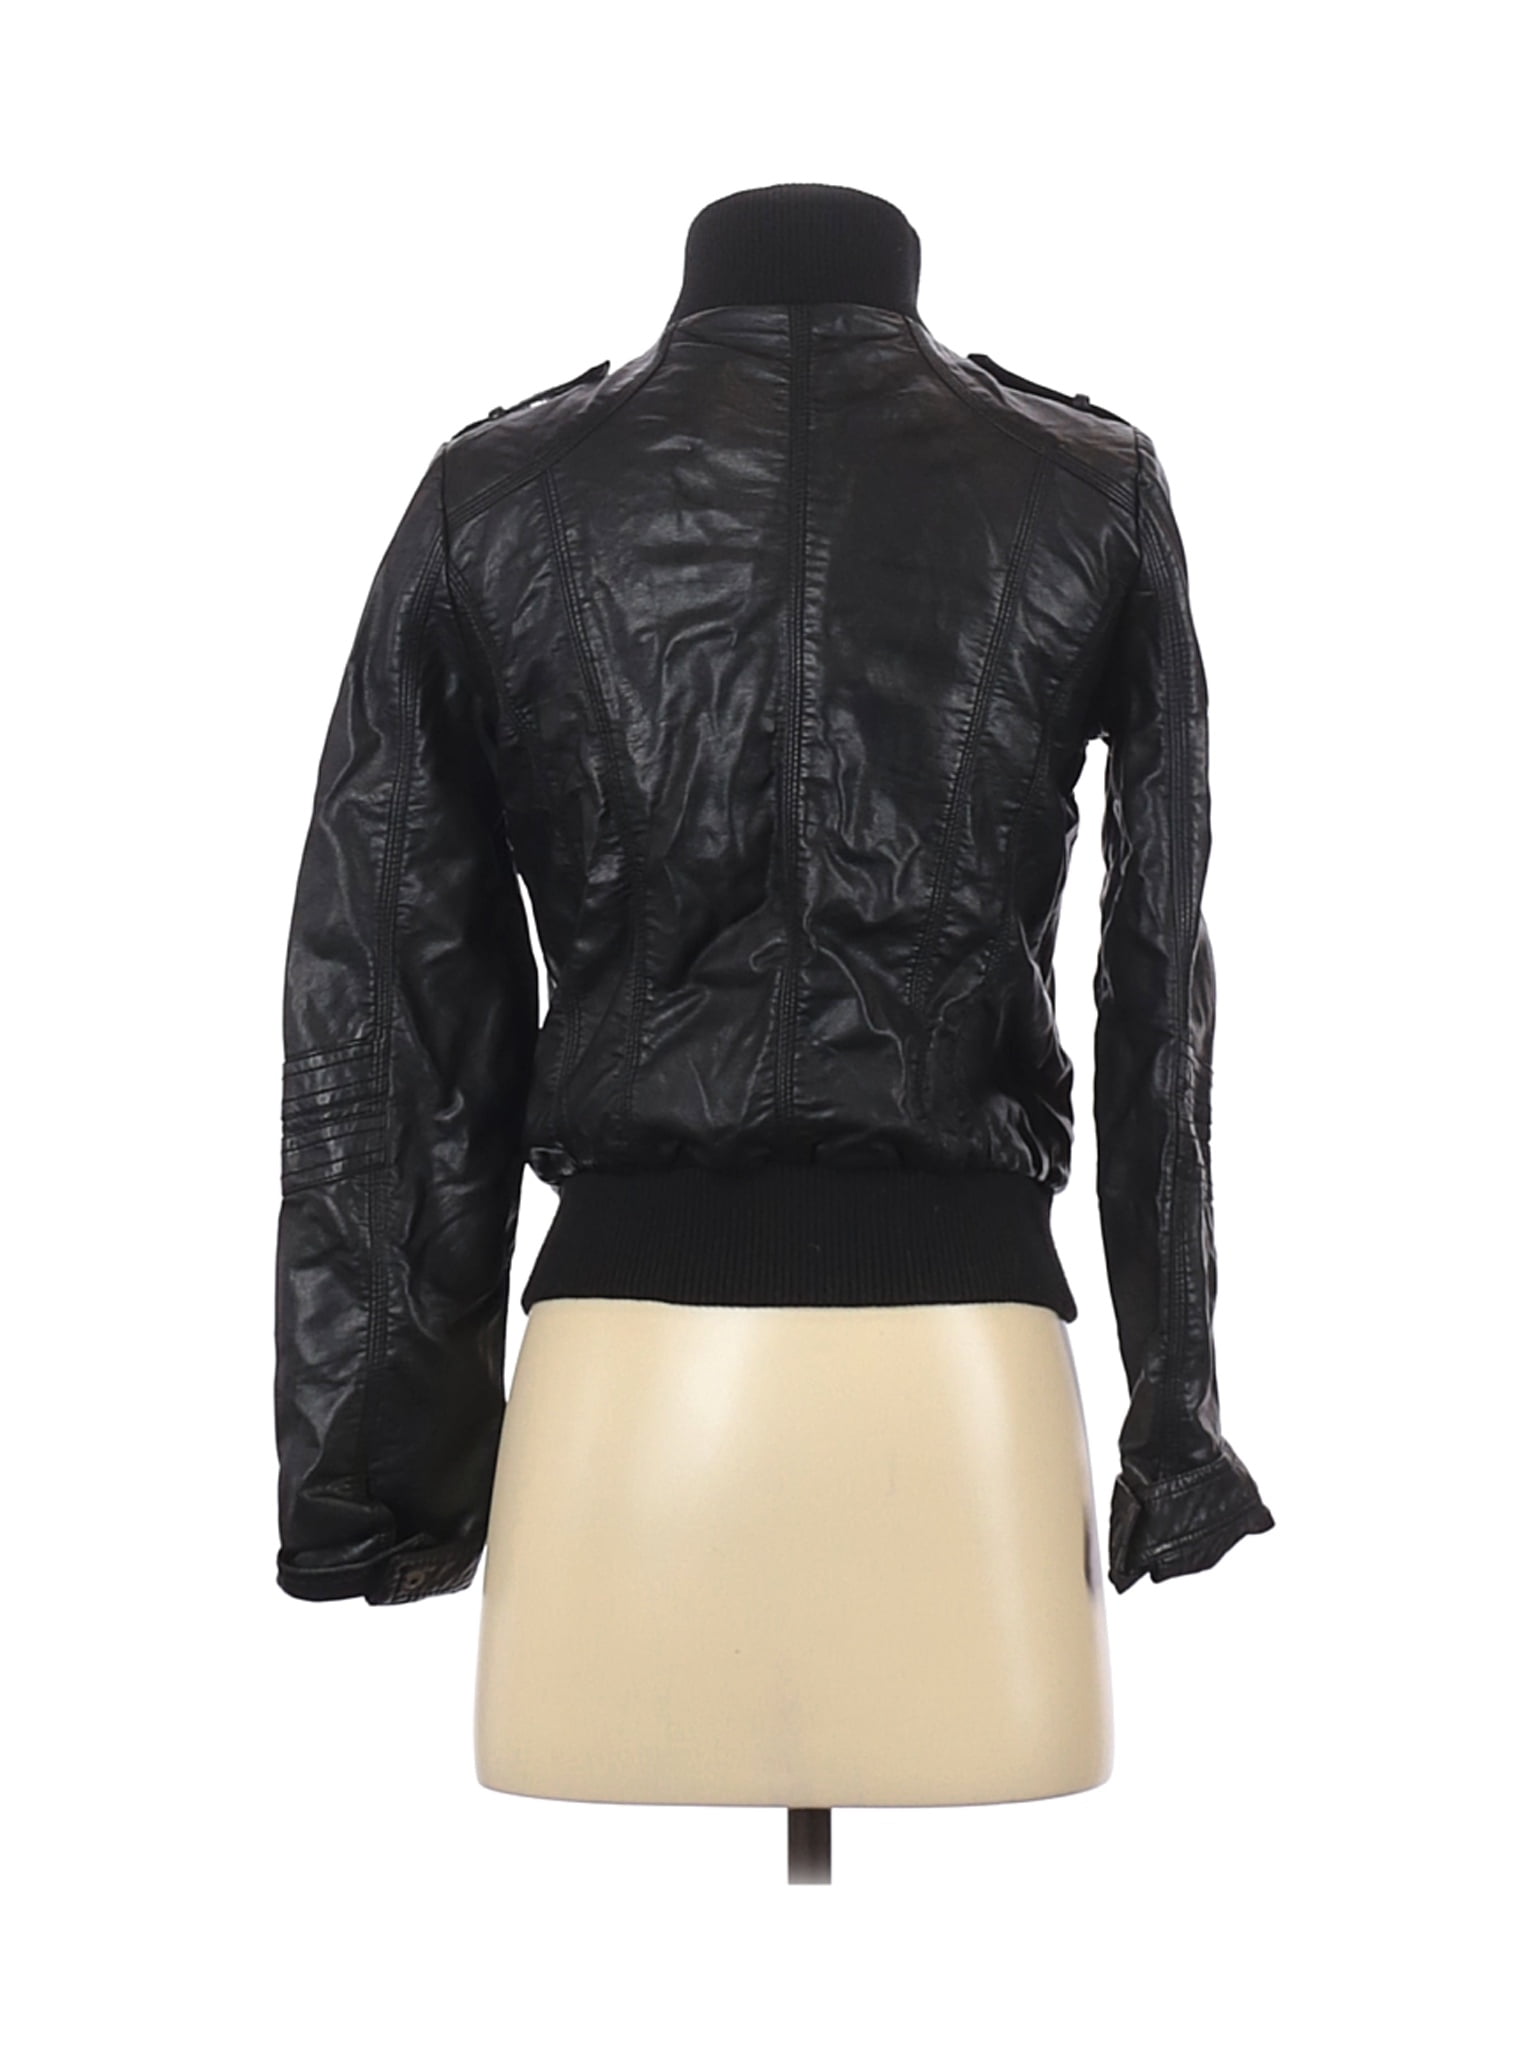 xhilaration black leather jacket